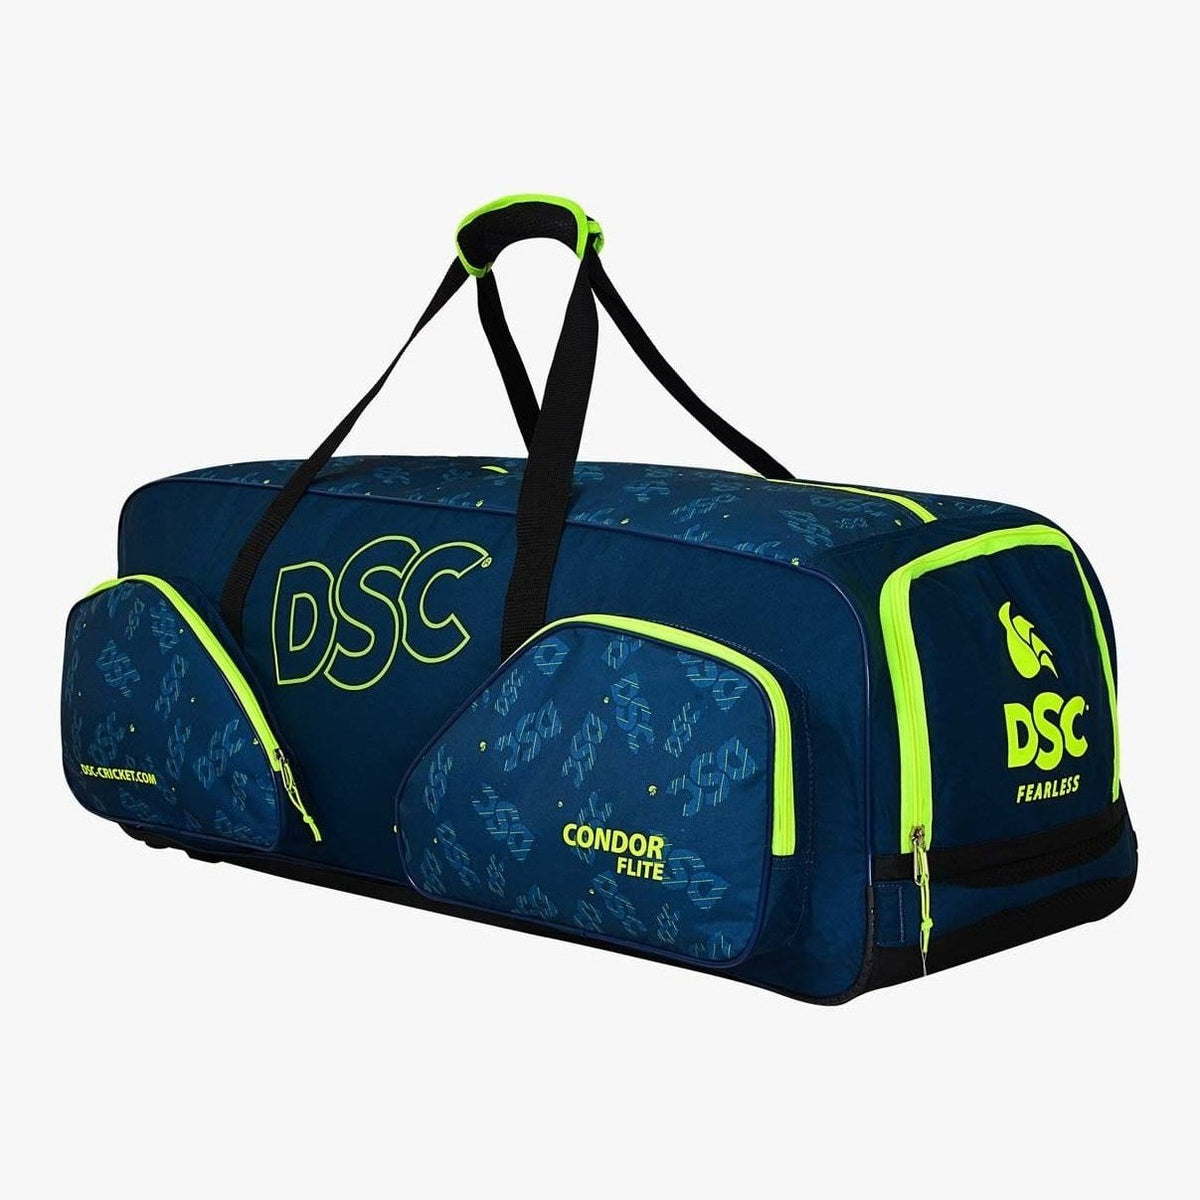 Adidas Cricket Bags DSC Condor Flite Wheels Cricket Bag